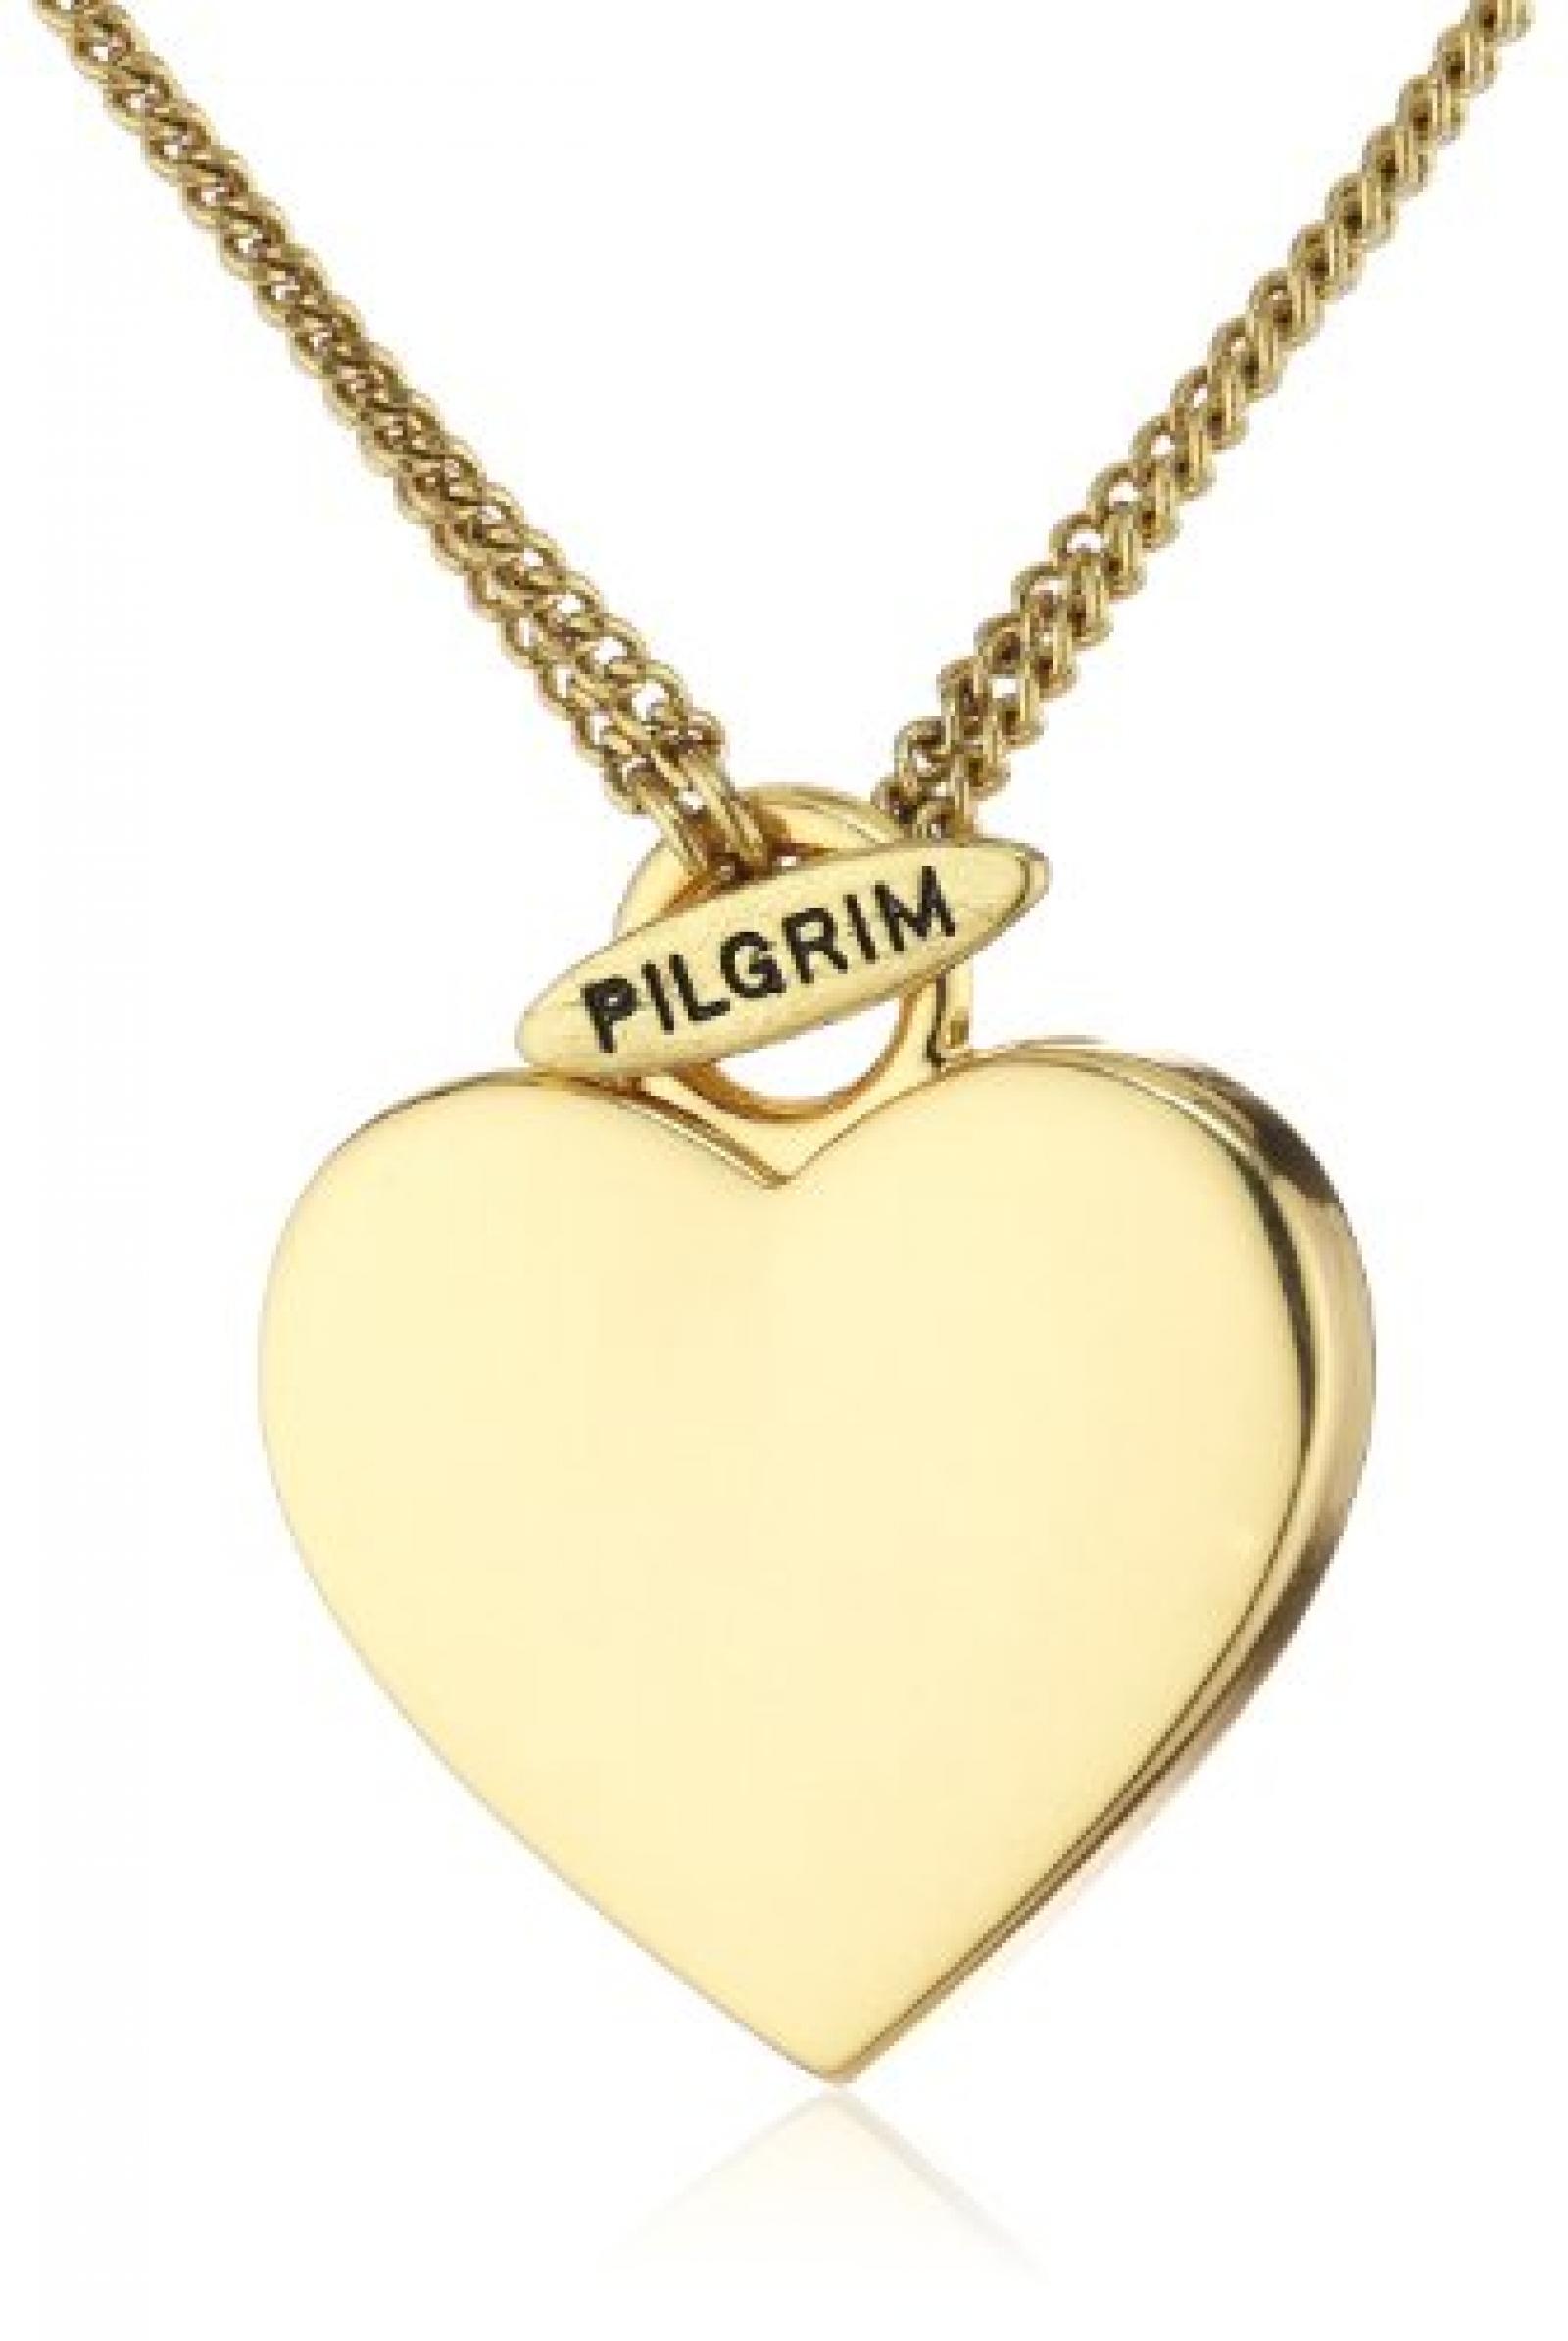 Pilgrim Jewelry Damen-Halskette Messing Pilgrim Damen-Halskette mit Anhänger aus der Serie Classic vergoldet,0 45.0 + 90.0 cm 601332051 